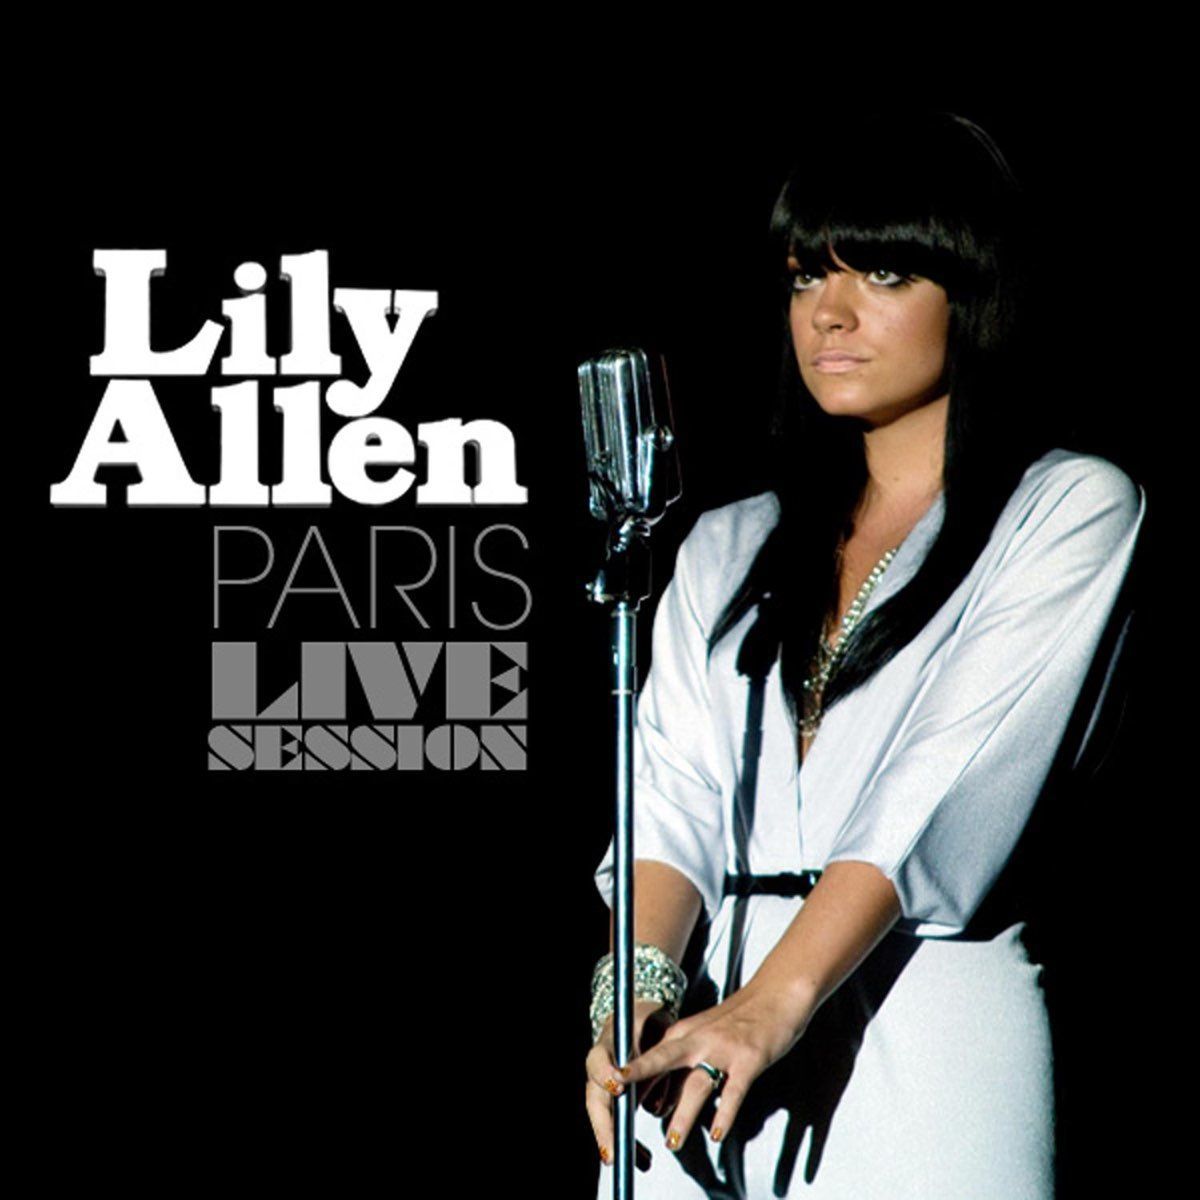 Imagem do álbum Paris Live Session do(a) artista Lily Allen